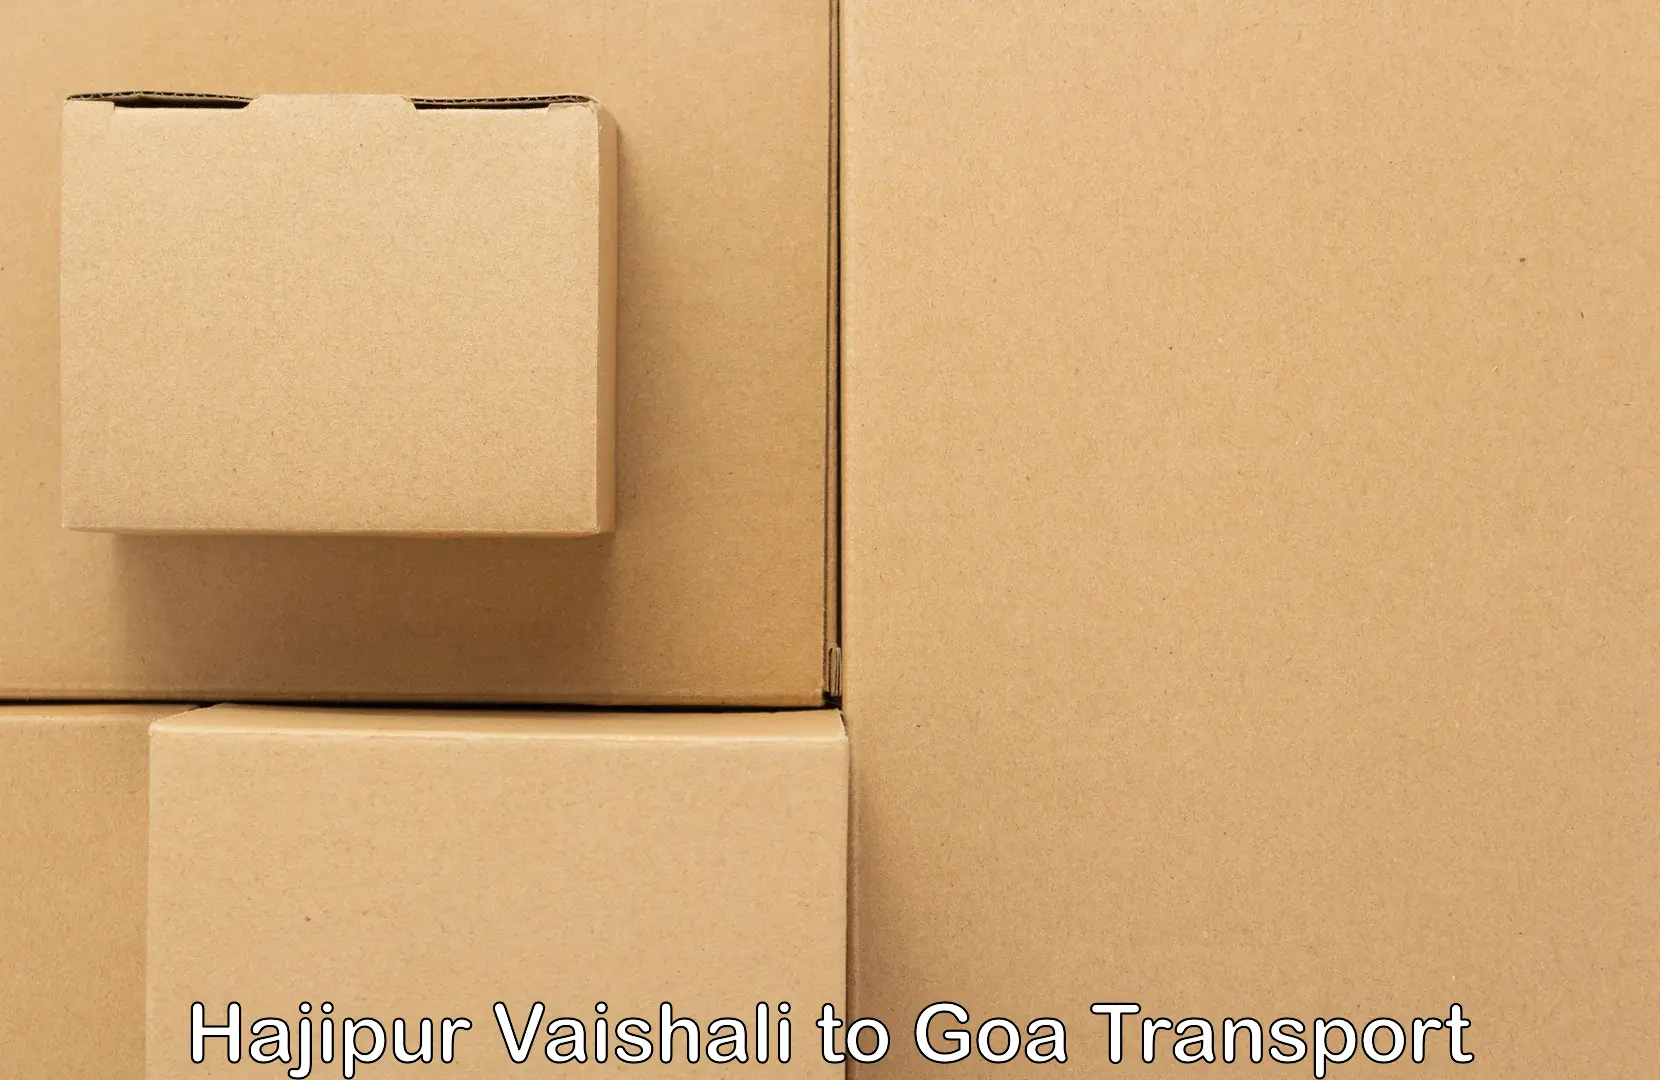 Bike shipping service Hajipur Vaishali to Vasco da Gama